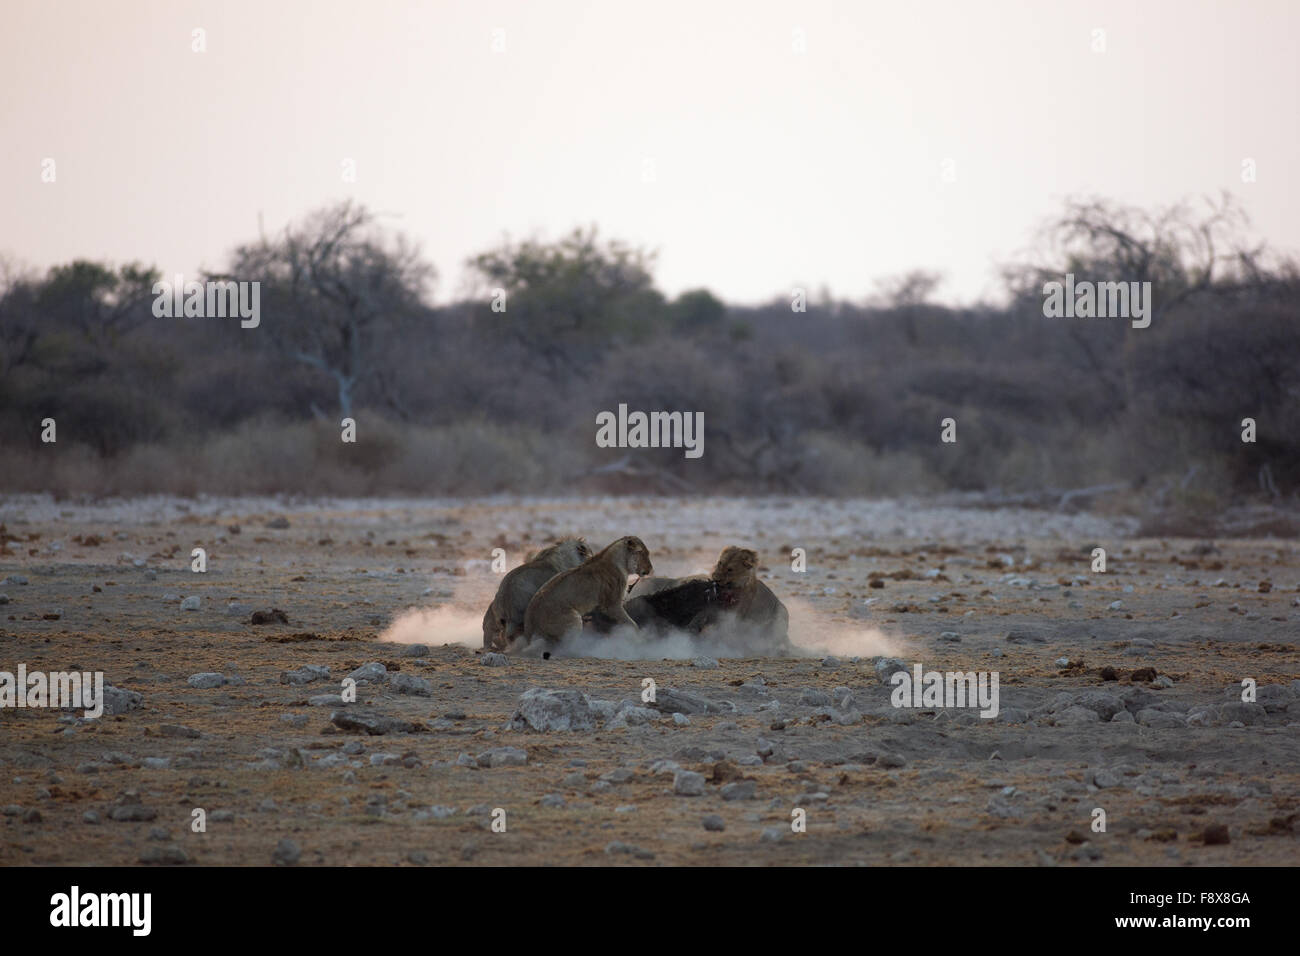 Lions feeding off an antelope carcass at sunrise. Etosha National Park, Namibia Stock Photo